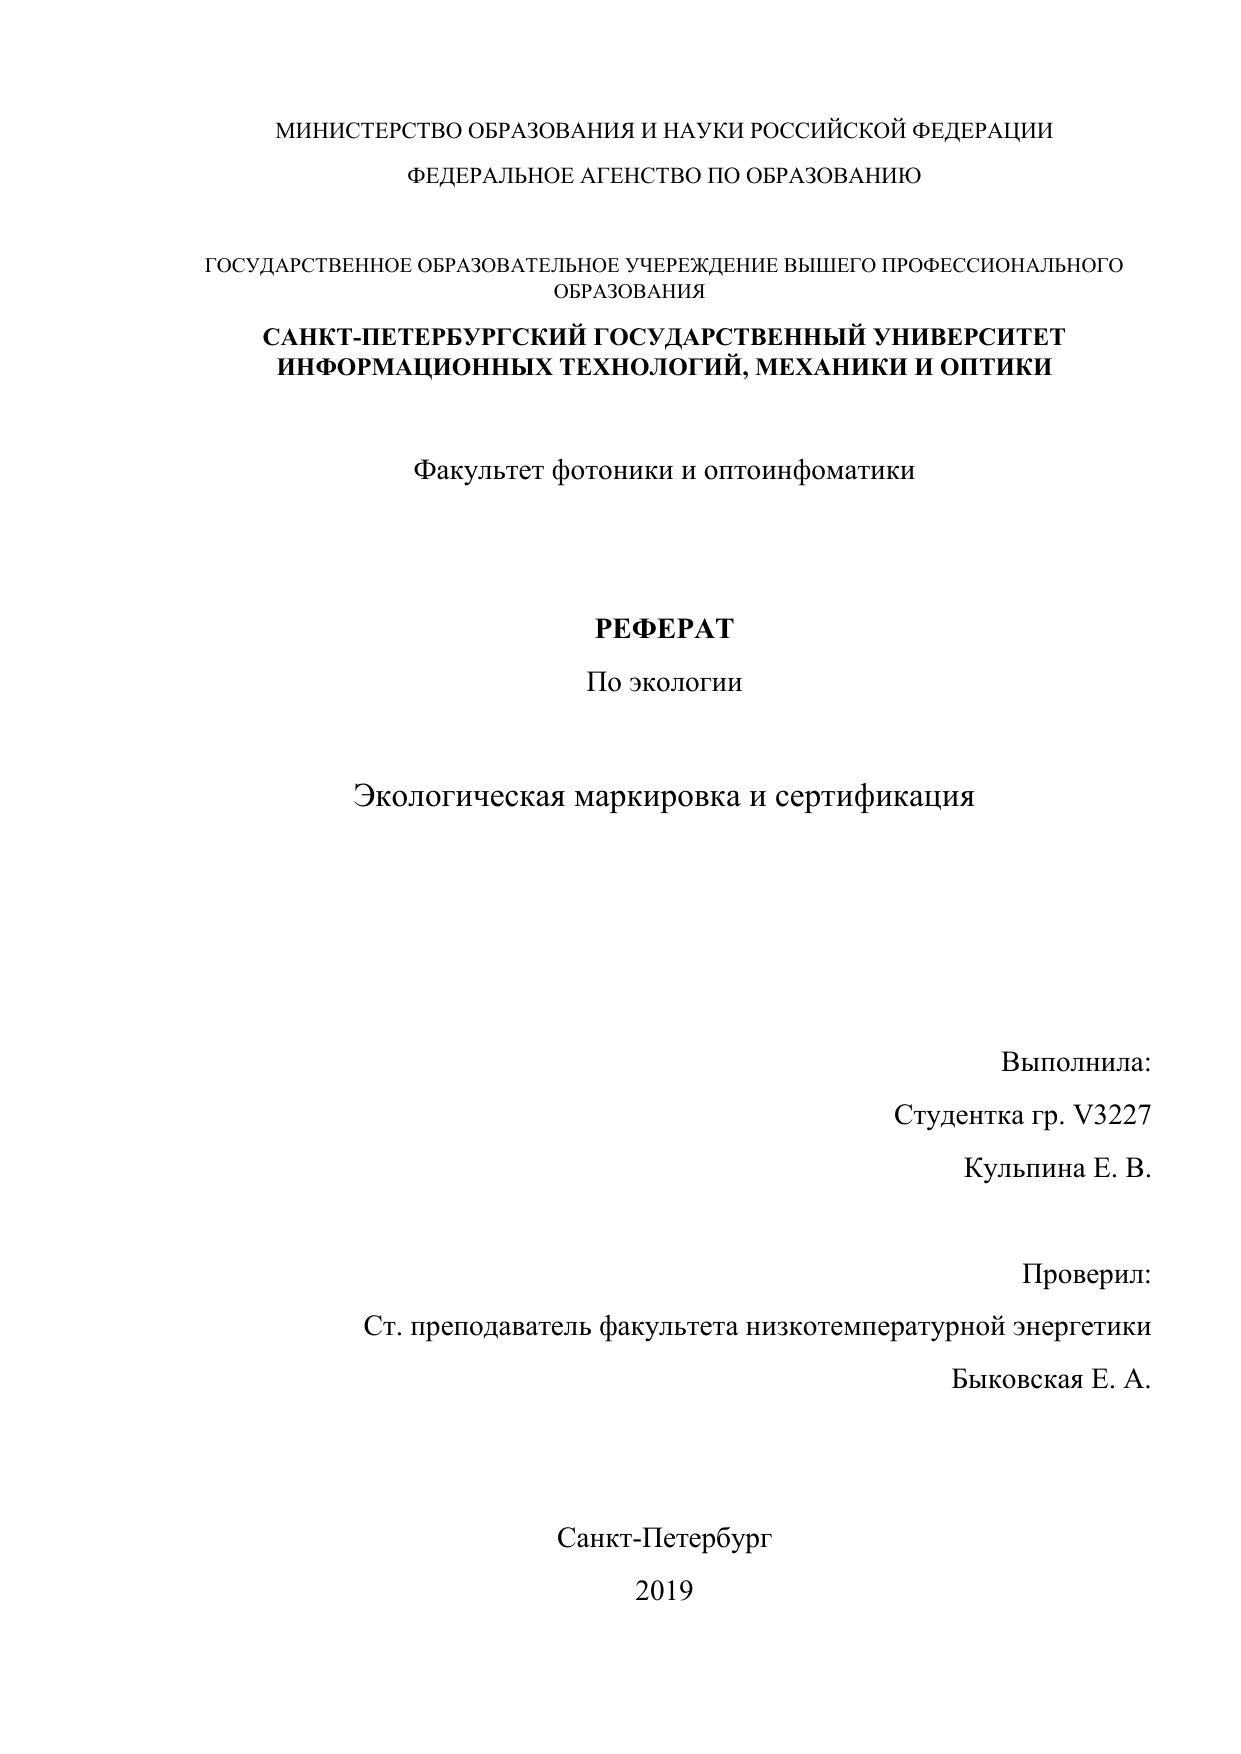 Реферат: Добровольная сертификация в Российской Федерации